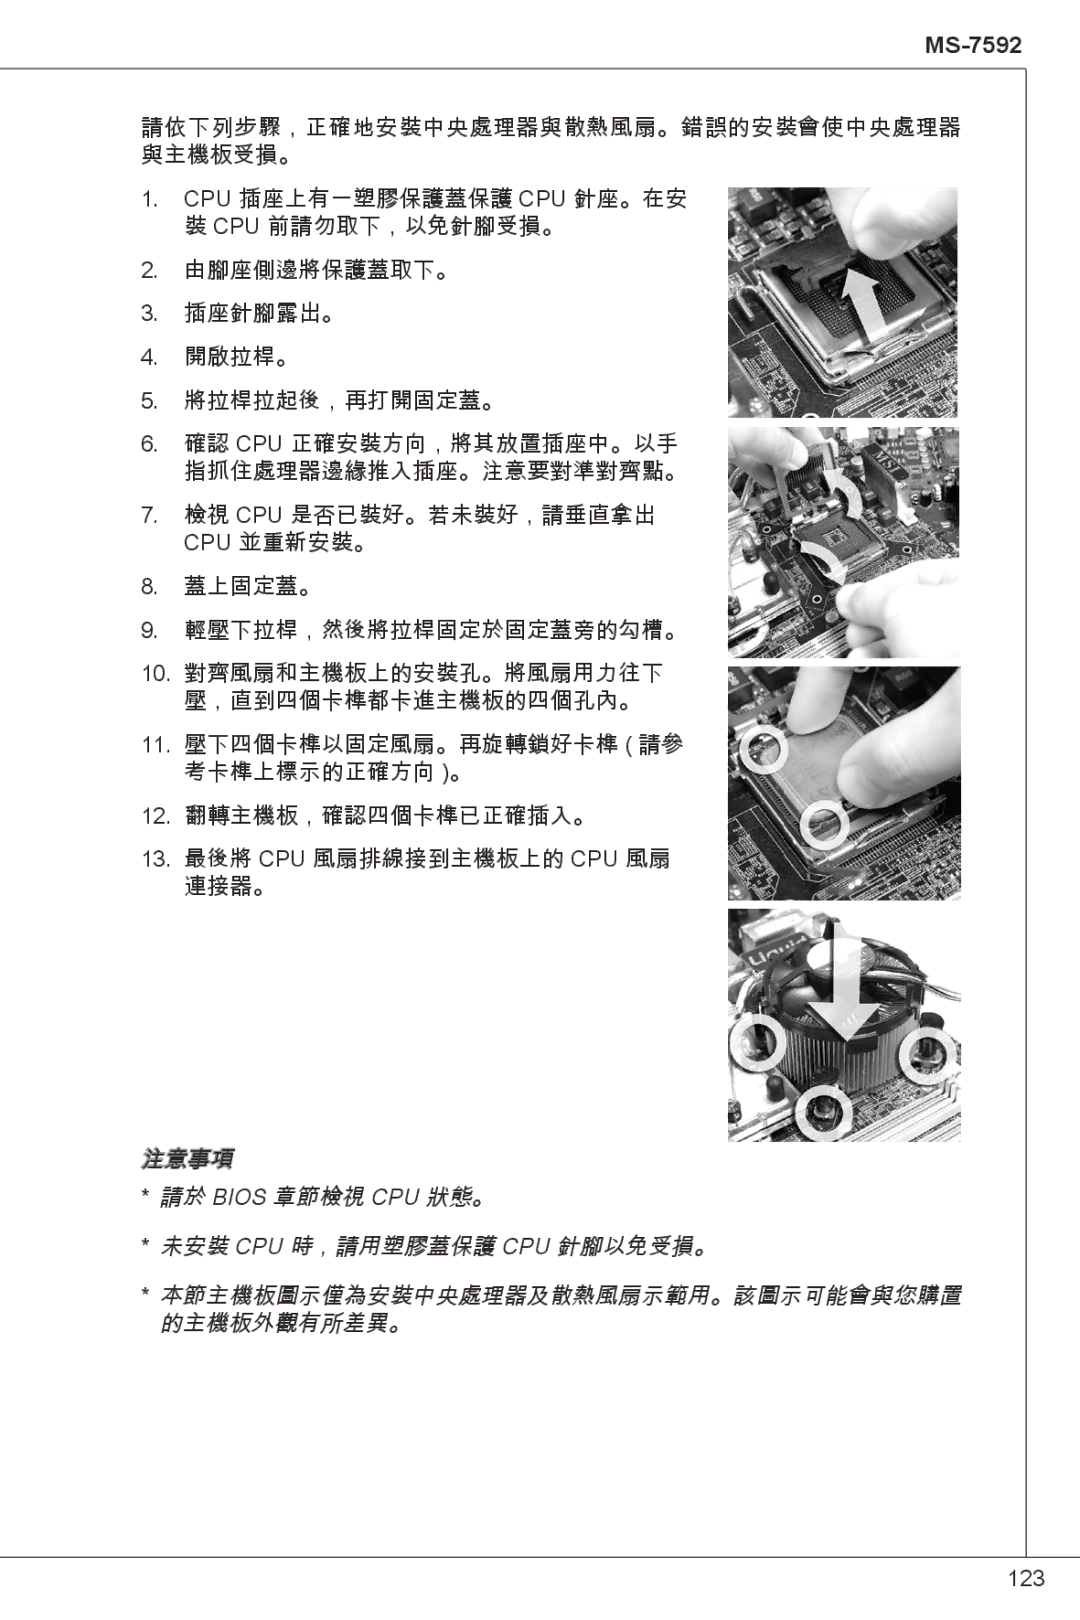 MSI G41M-P23 manual 123 